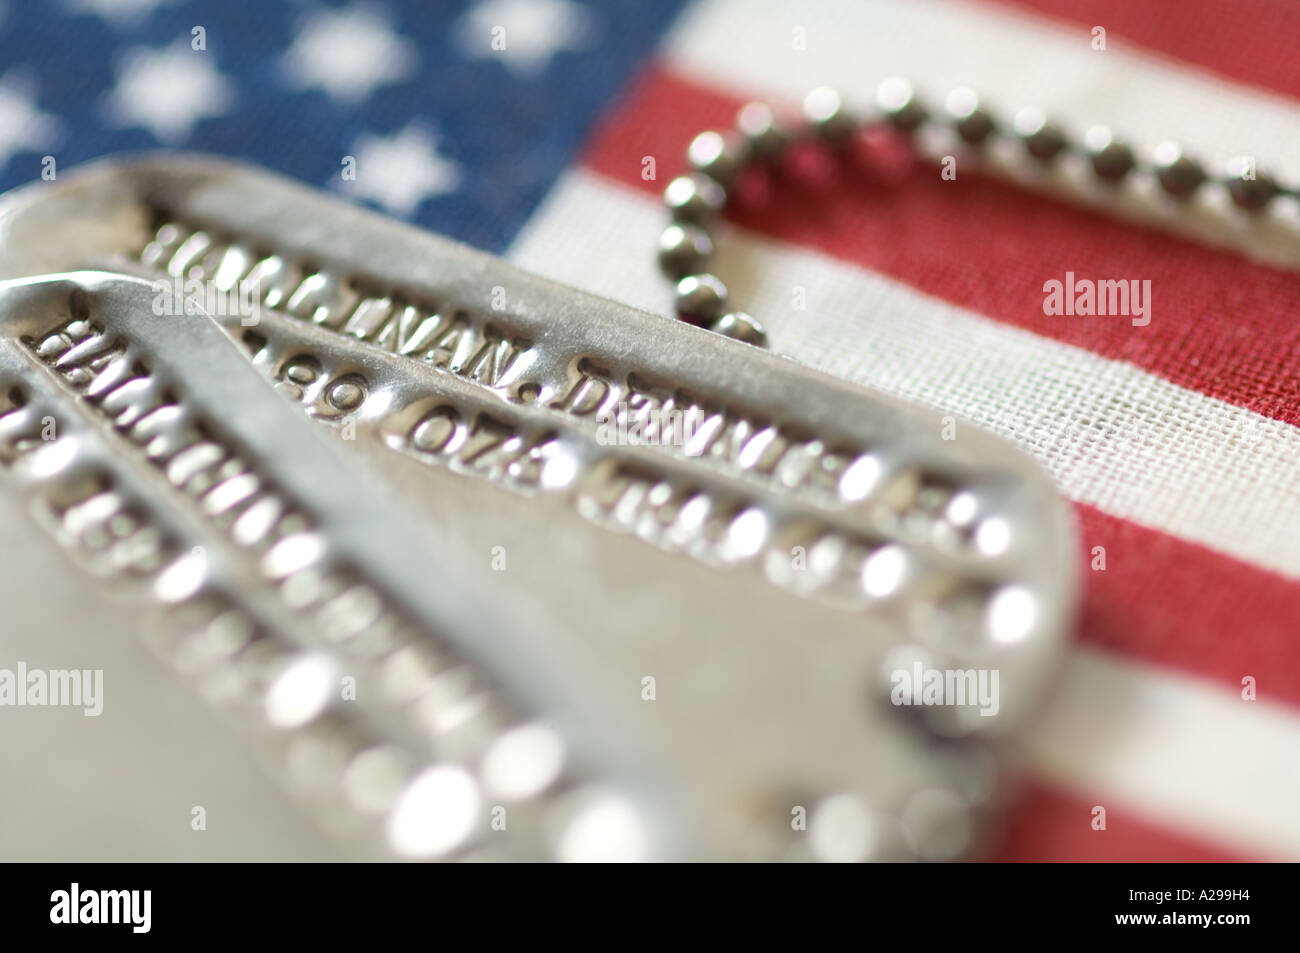 Libre Vue conceptuelle du militaire américain dog tags sur United States flag Banque D'Images